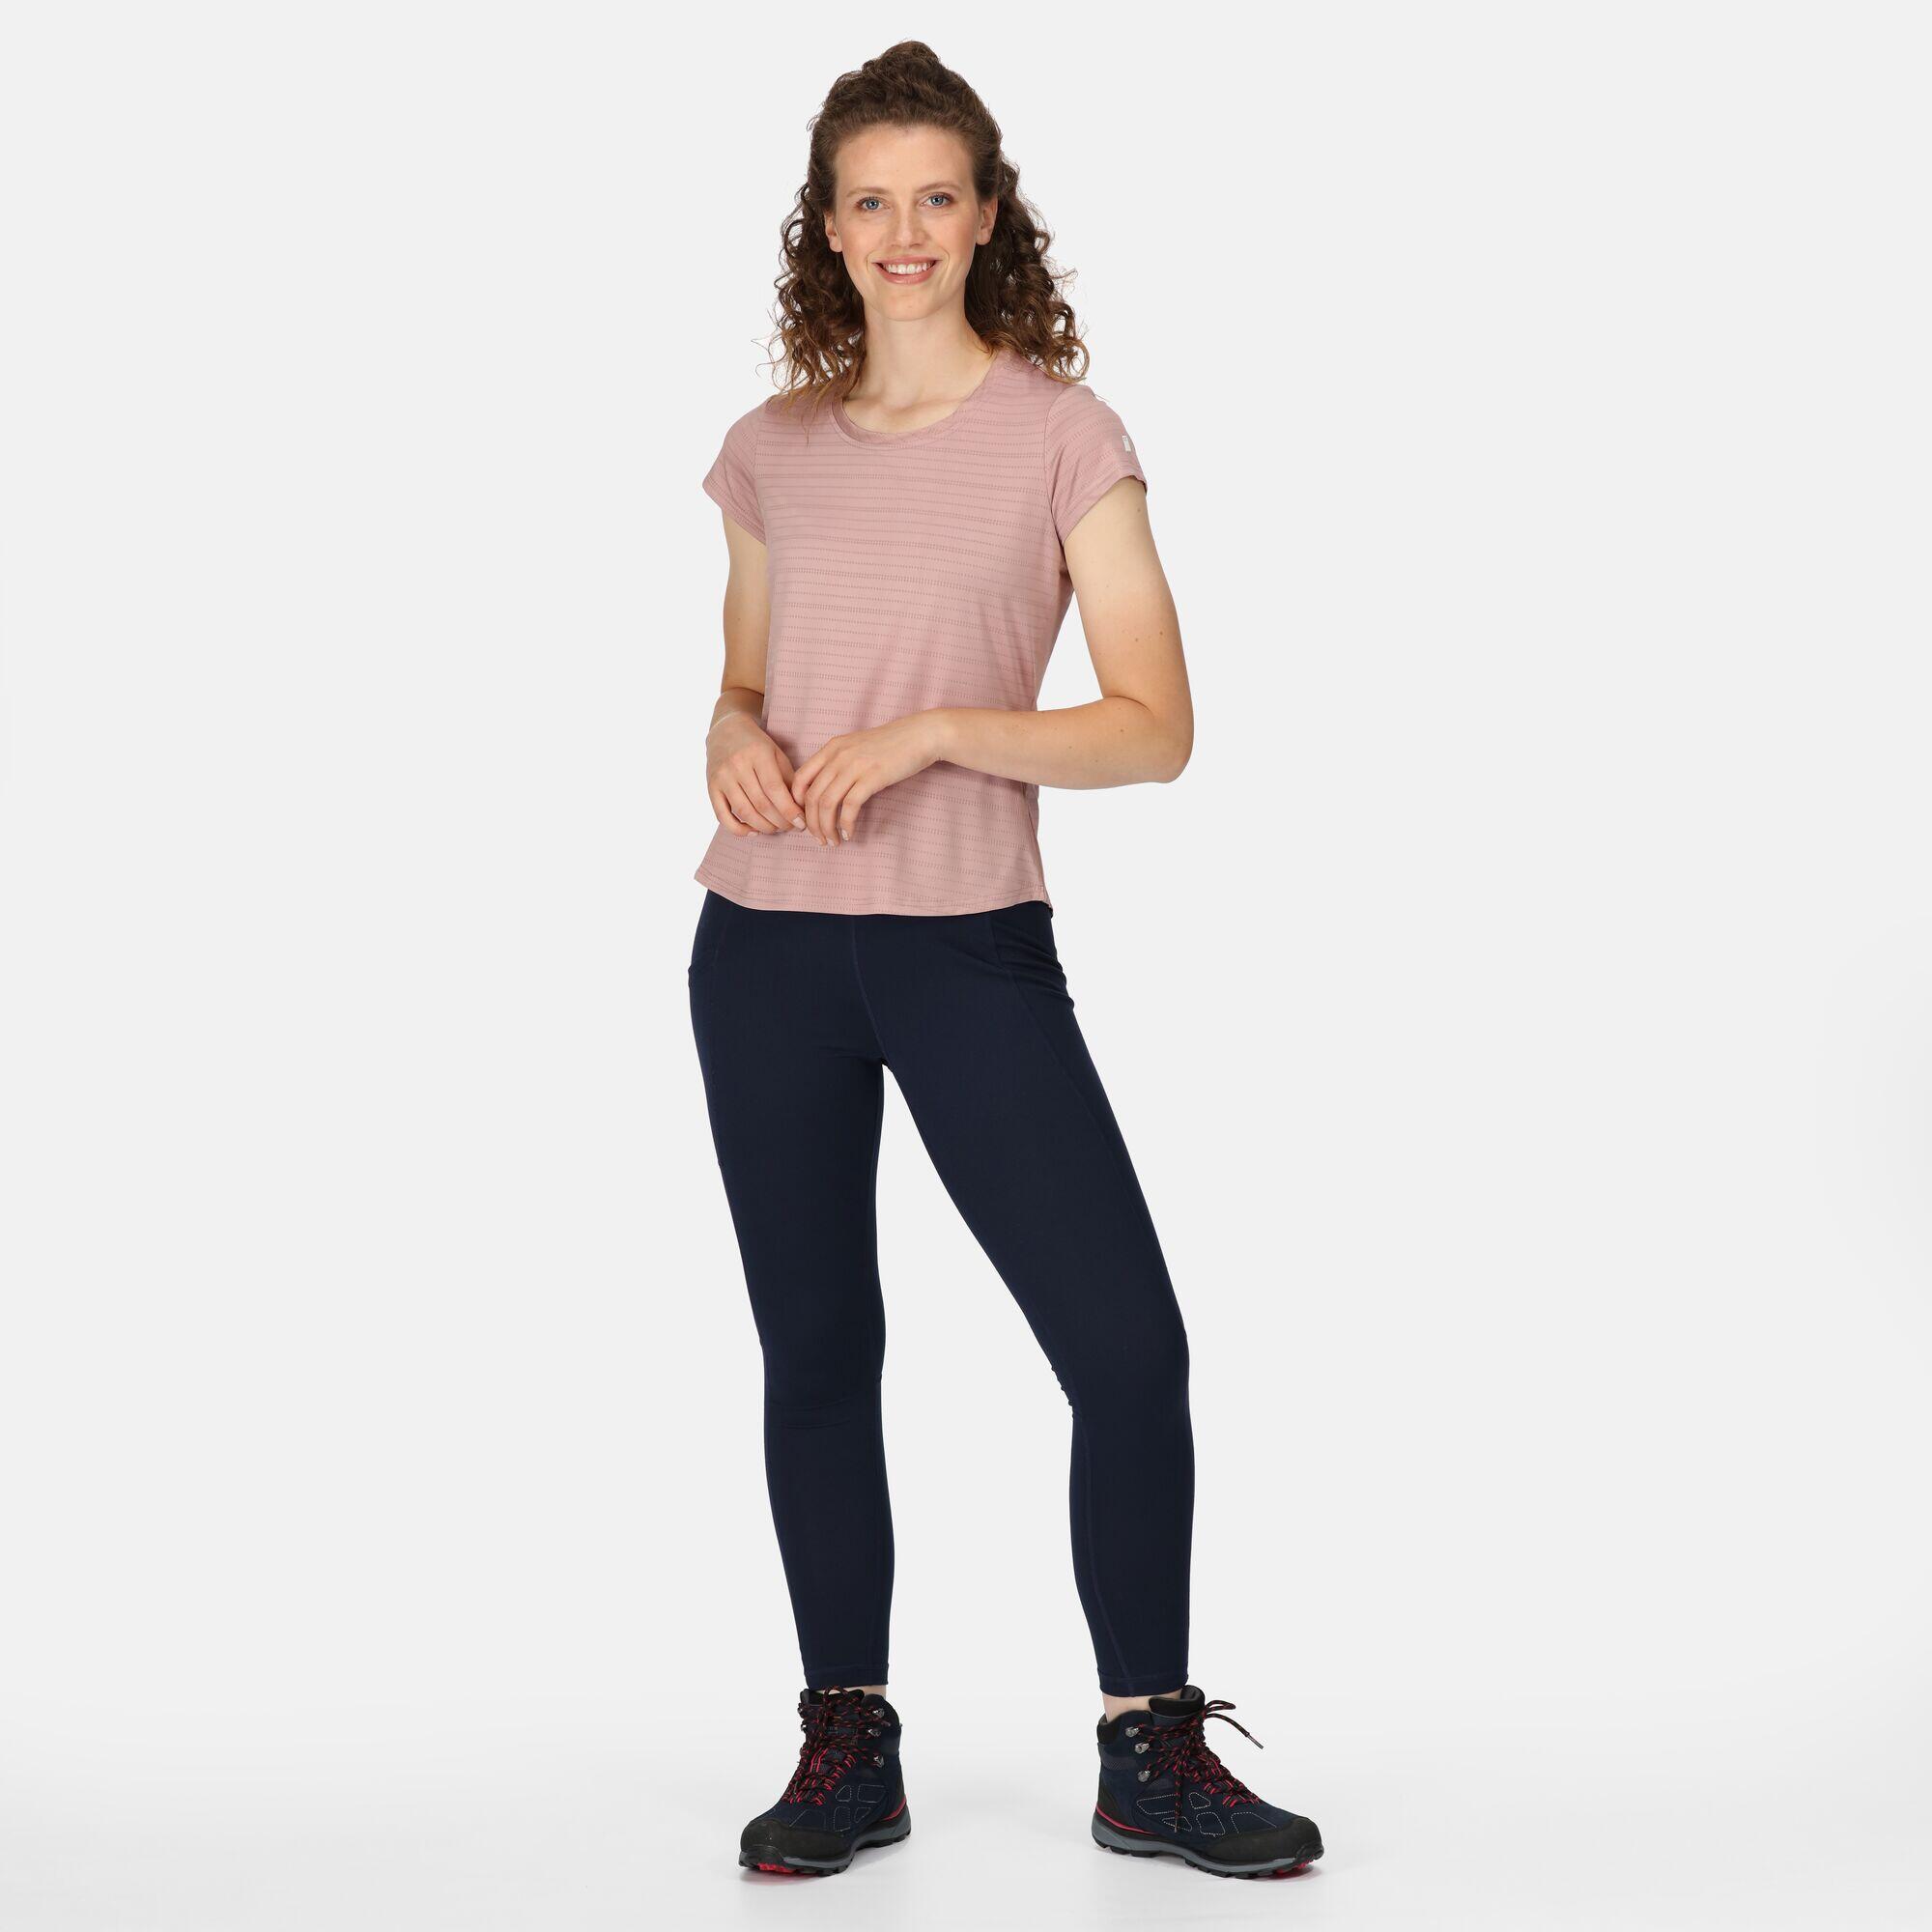 Limonite VI Women's Fitness Short Sleeve T-Shirt 3/7